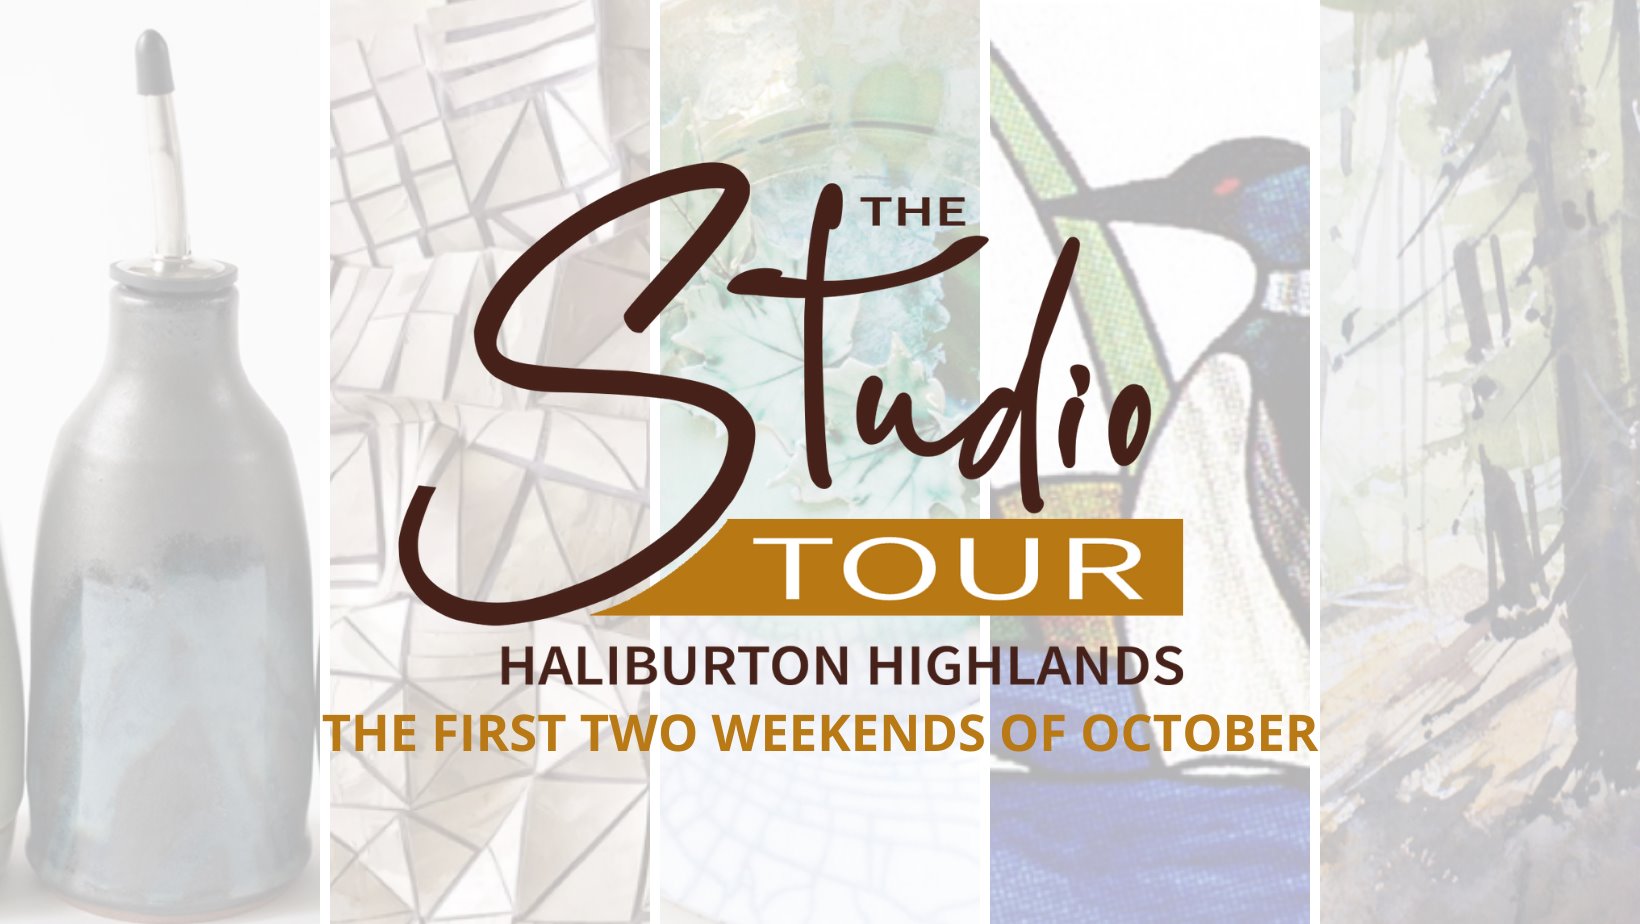 haliburton studio tour 2023 dates